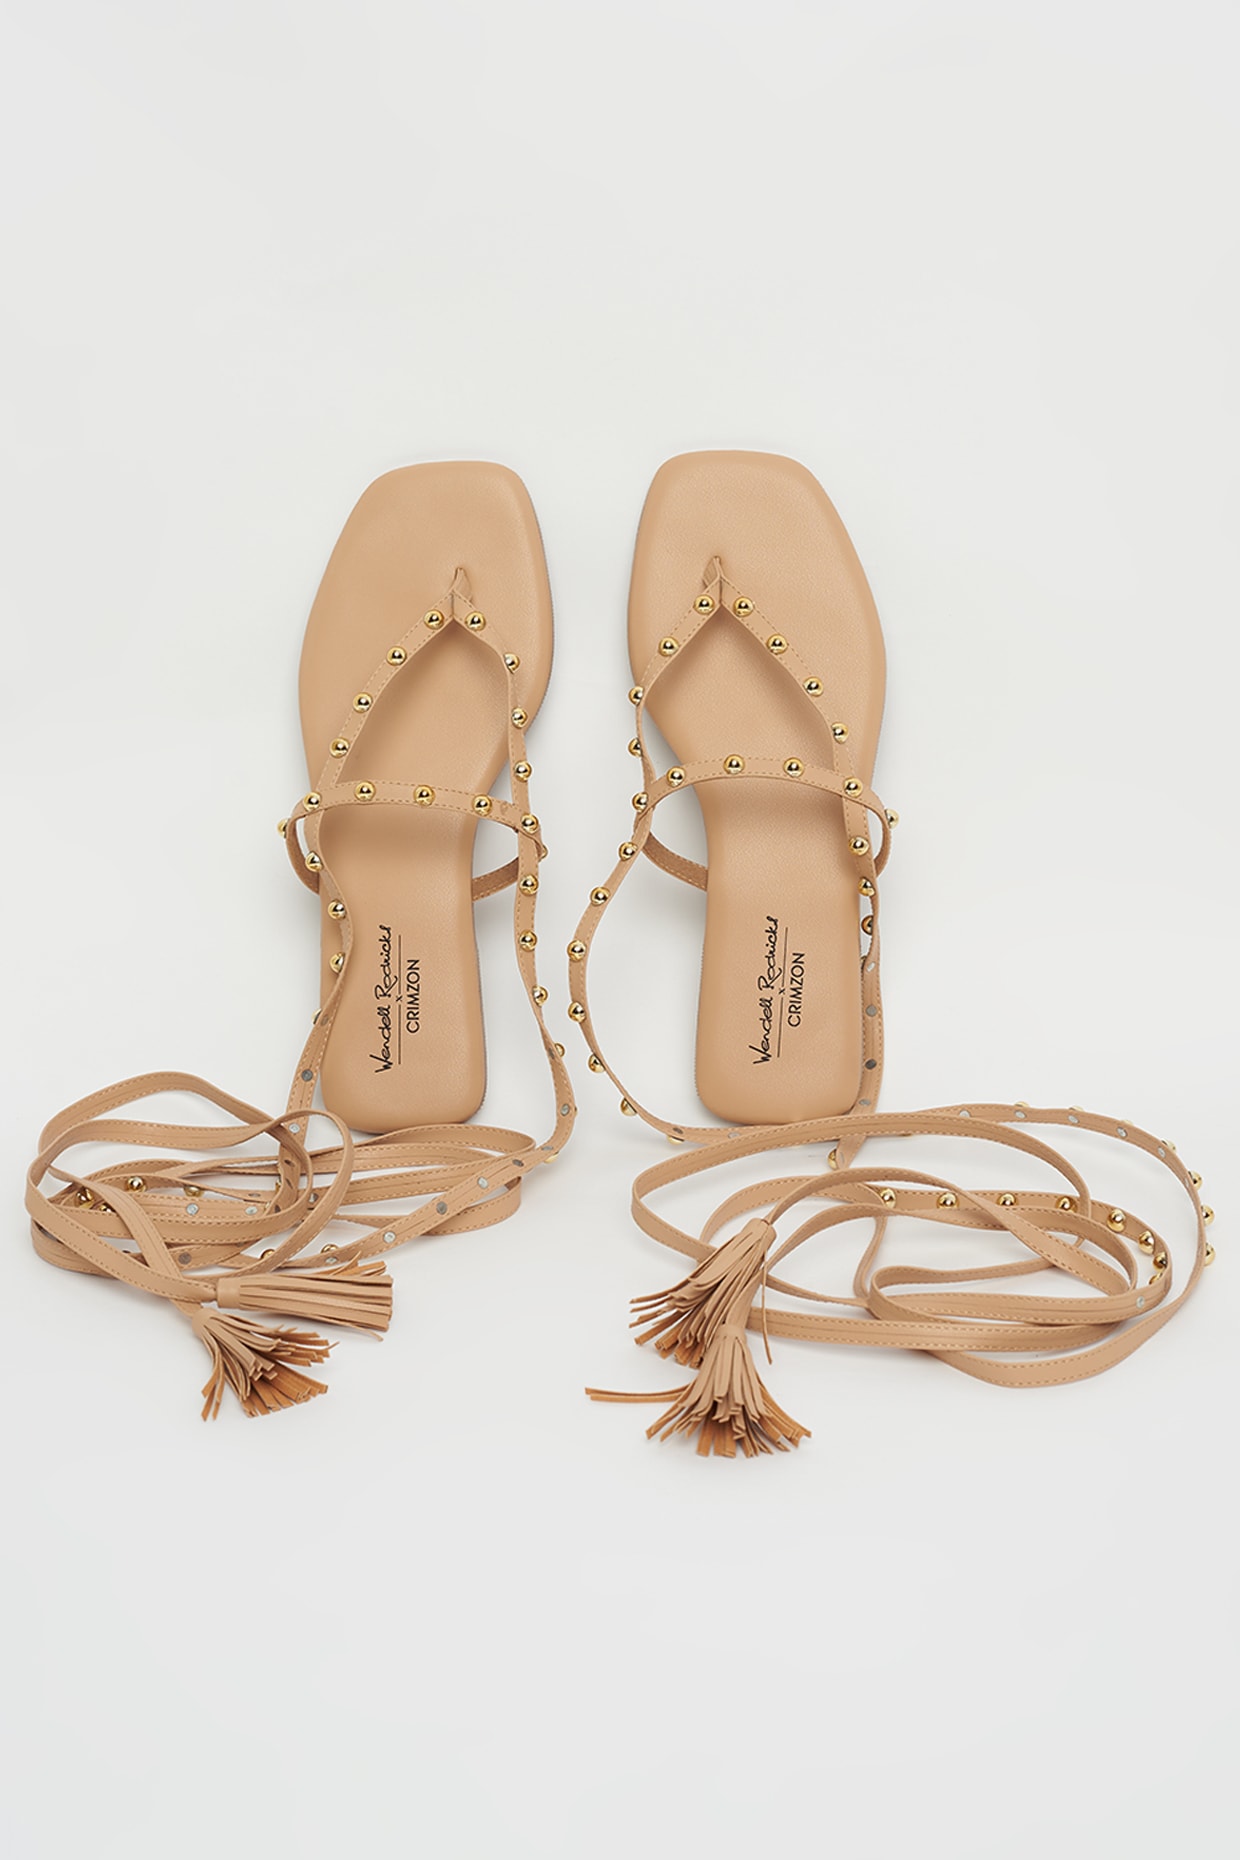 Light Beige Tie-Up Flat Sandals Design by Crimzon x Wendell Rodricks at  Pernia's Pop Up Shop 2024